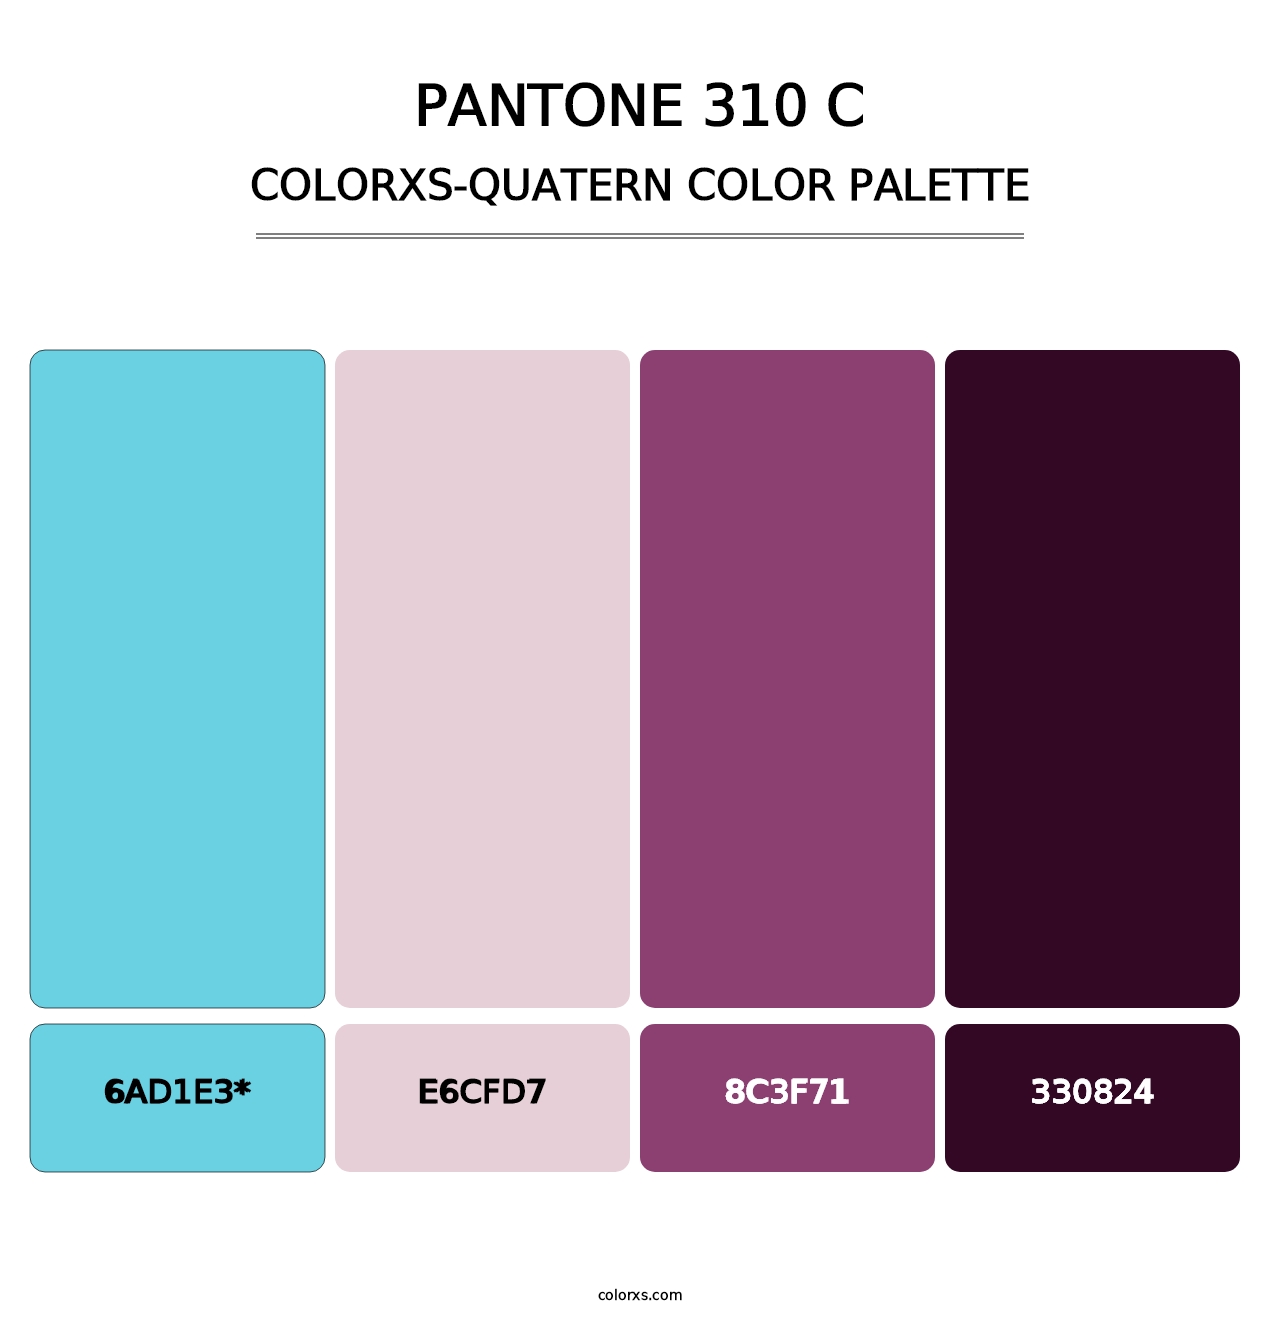 PANTONE 310 C - Colorxs Quatern Palette